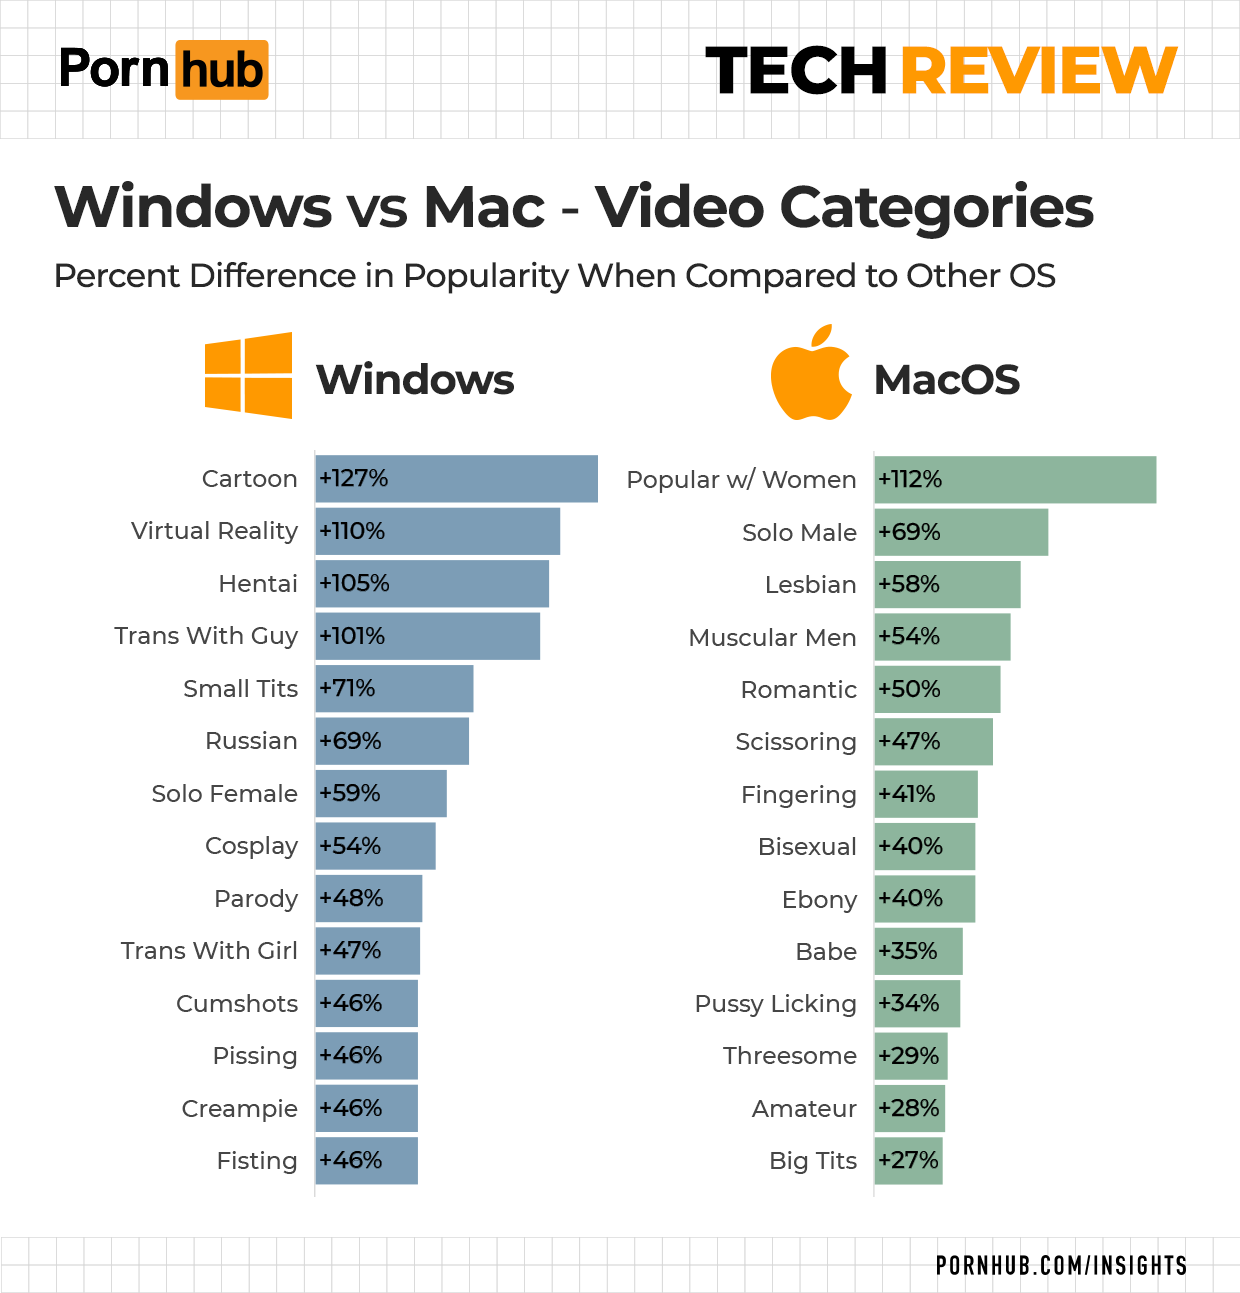 The Pornhub Tech Review image